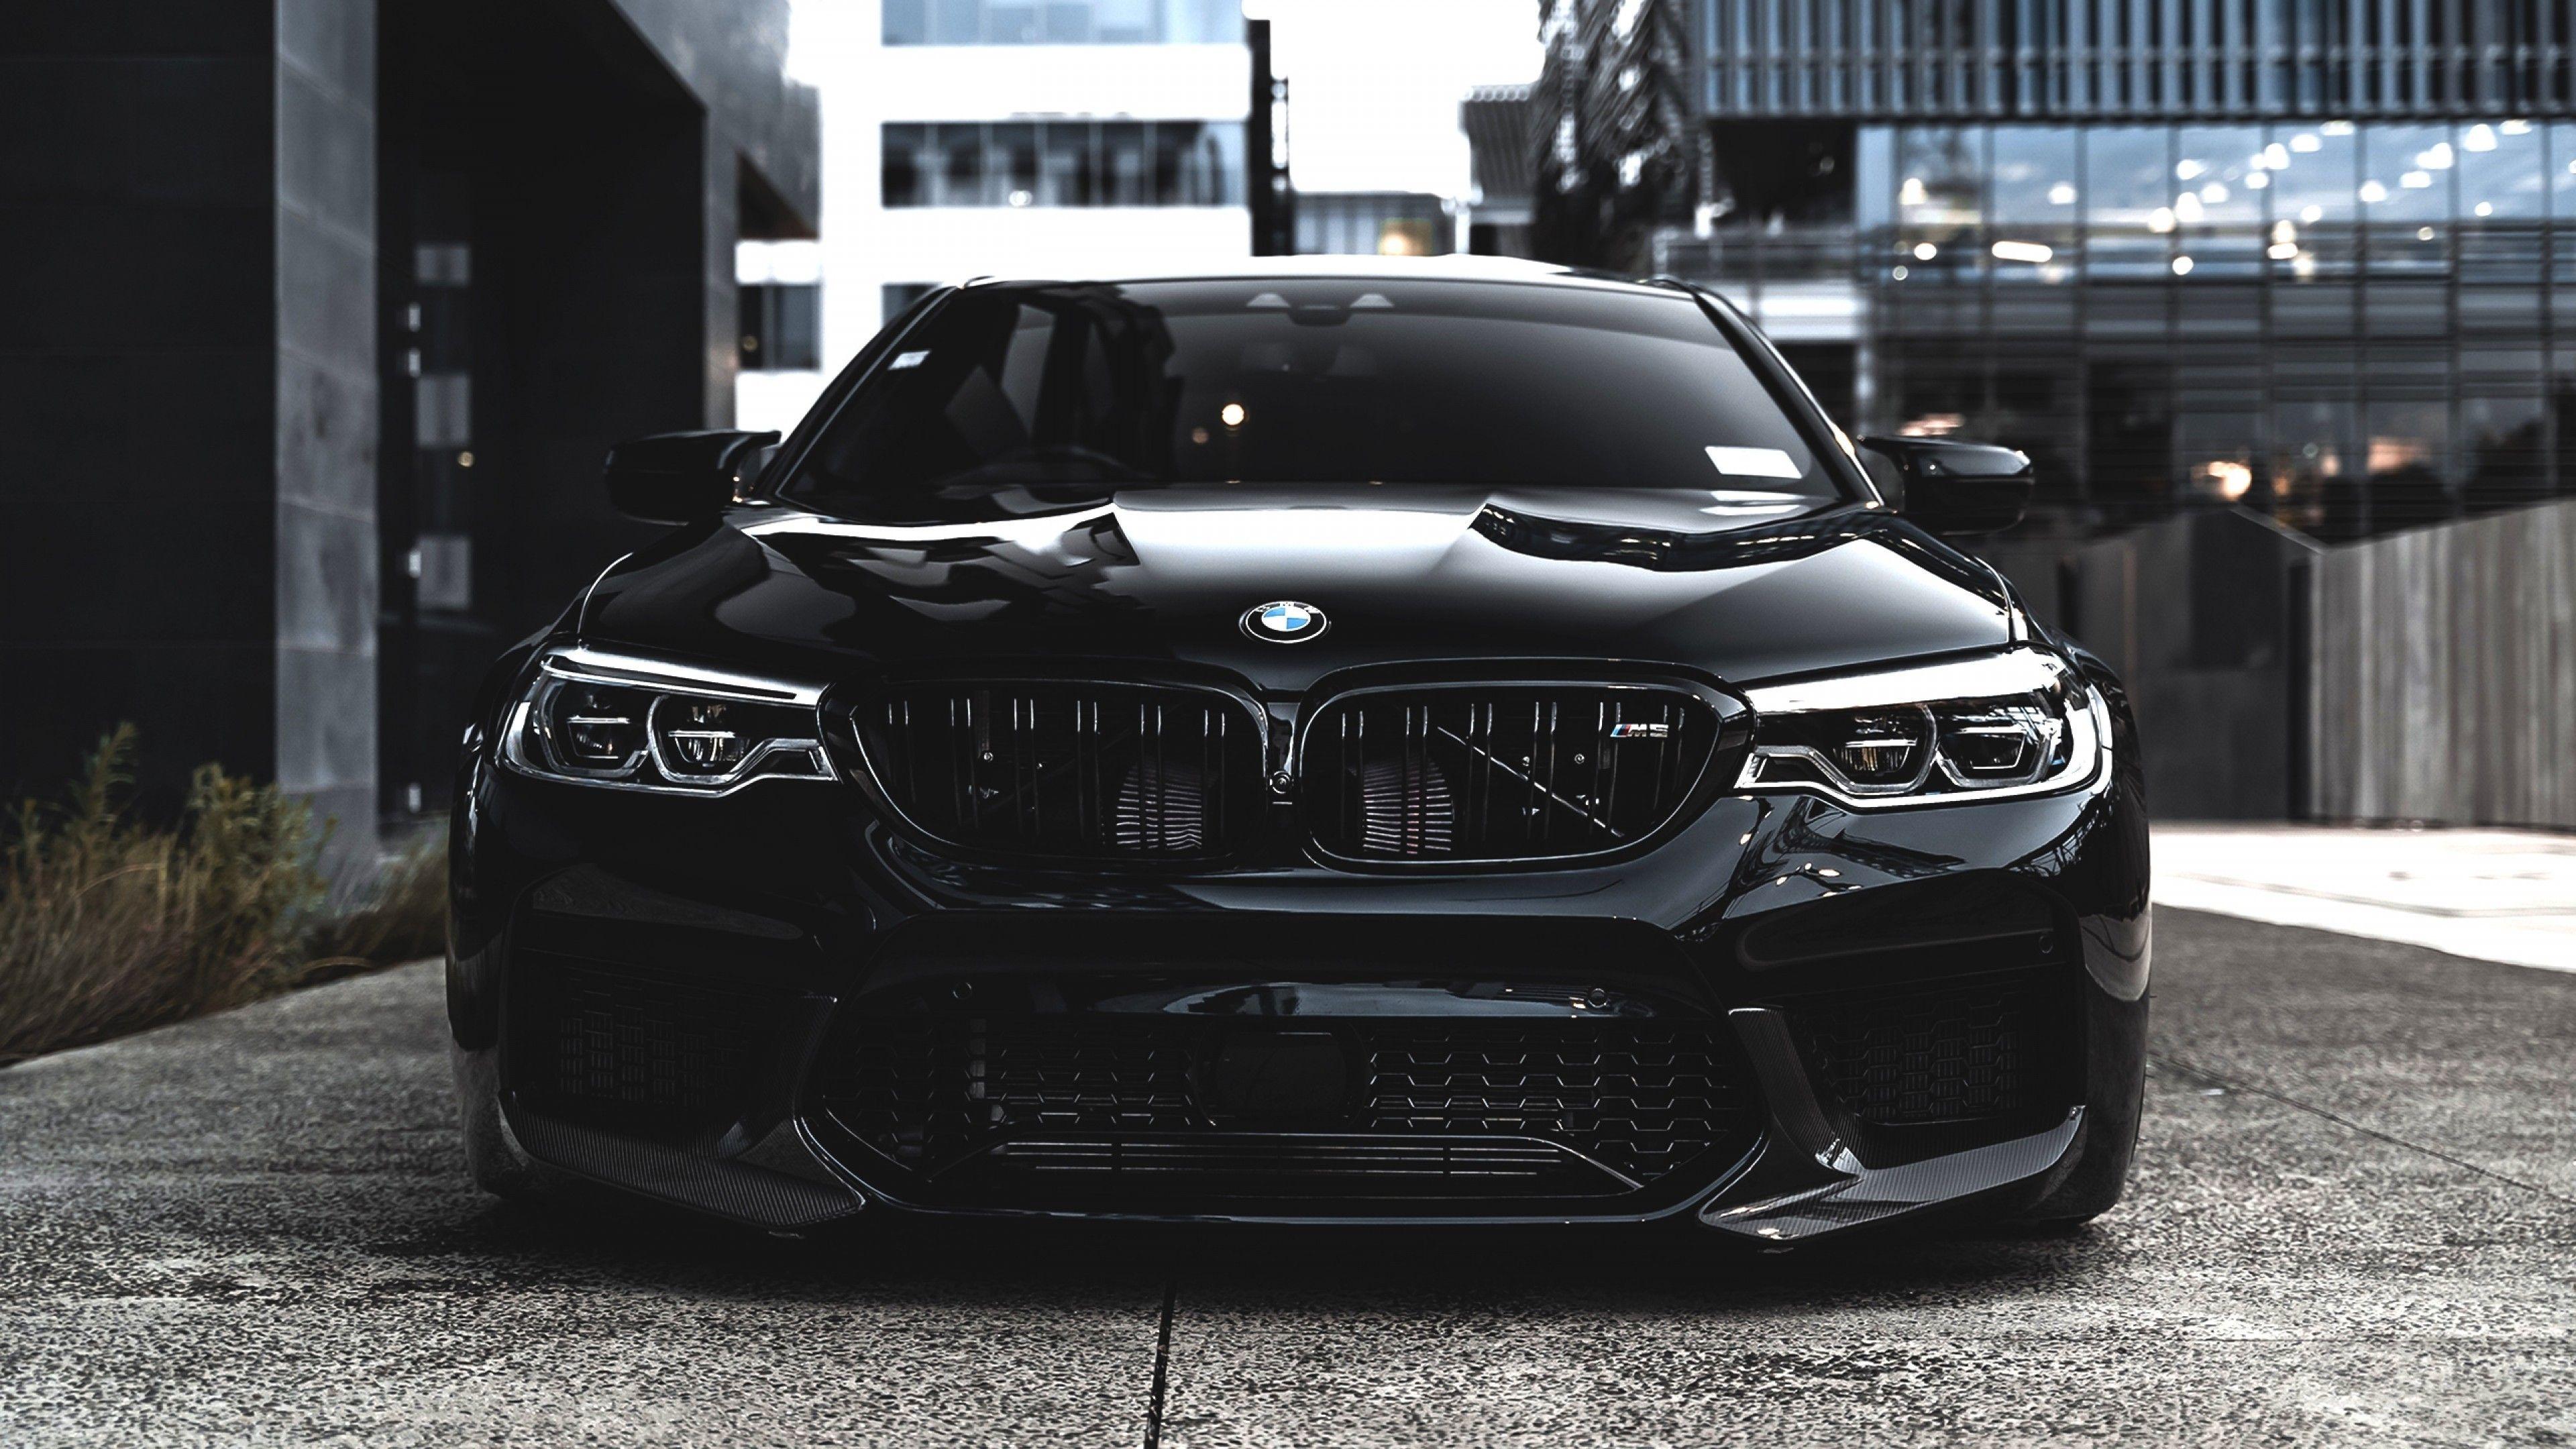 Black BMW Wallpapers - Top Những Hình Ảnh Đẹp